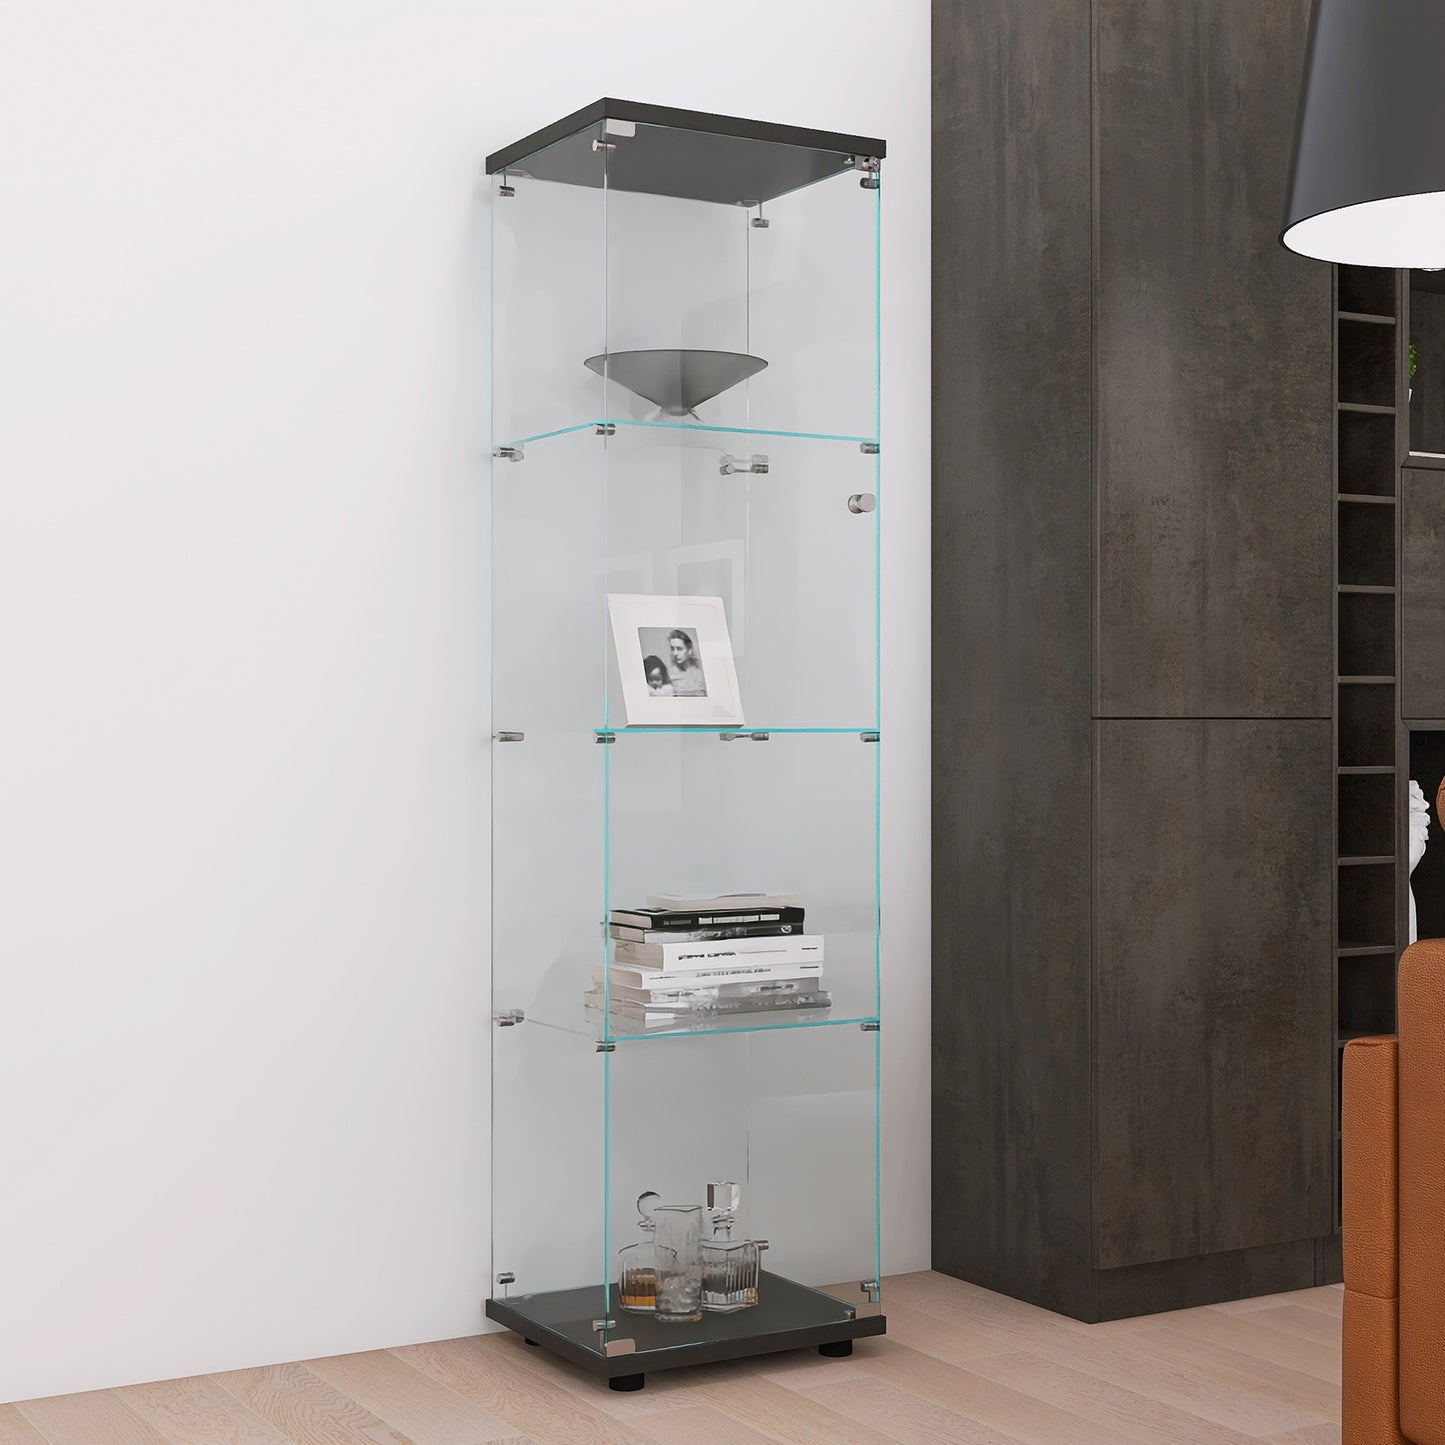 Glass Display Cabinet 4 Shelves with Door, Floor Standing Curio Bookshelf for Living Room Bedroom Office, 64.56"